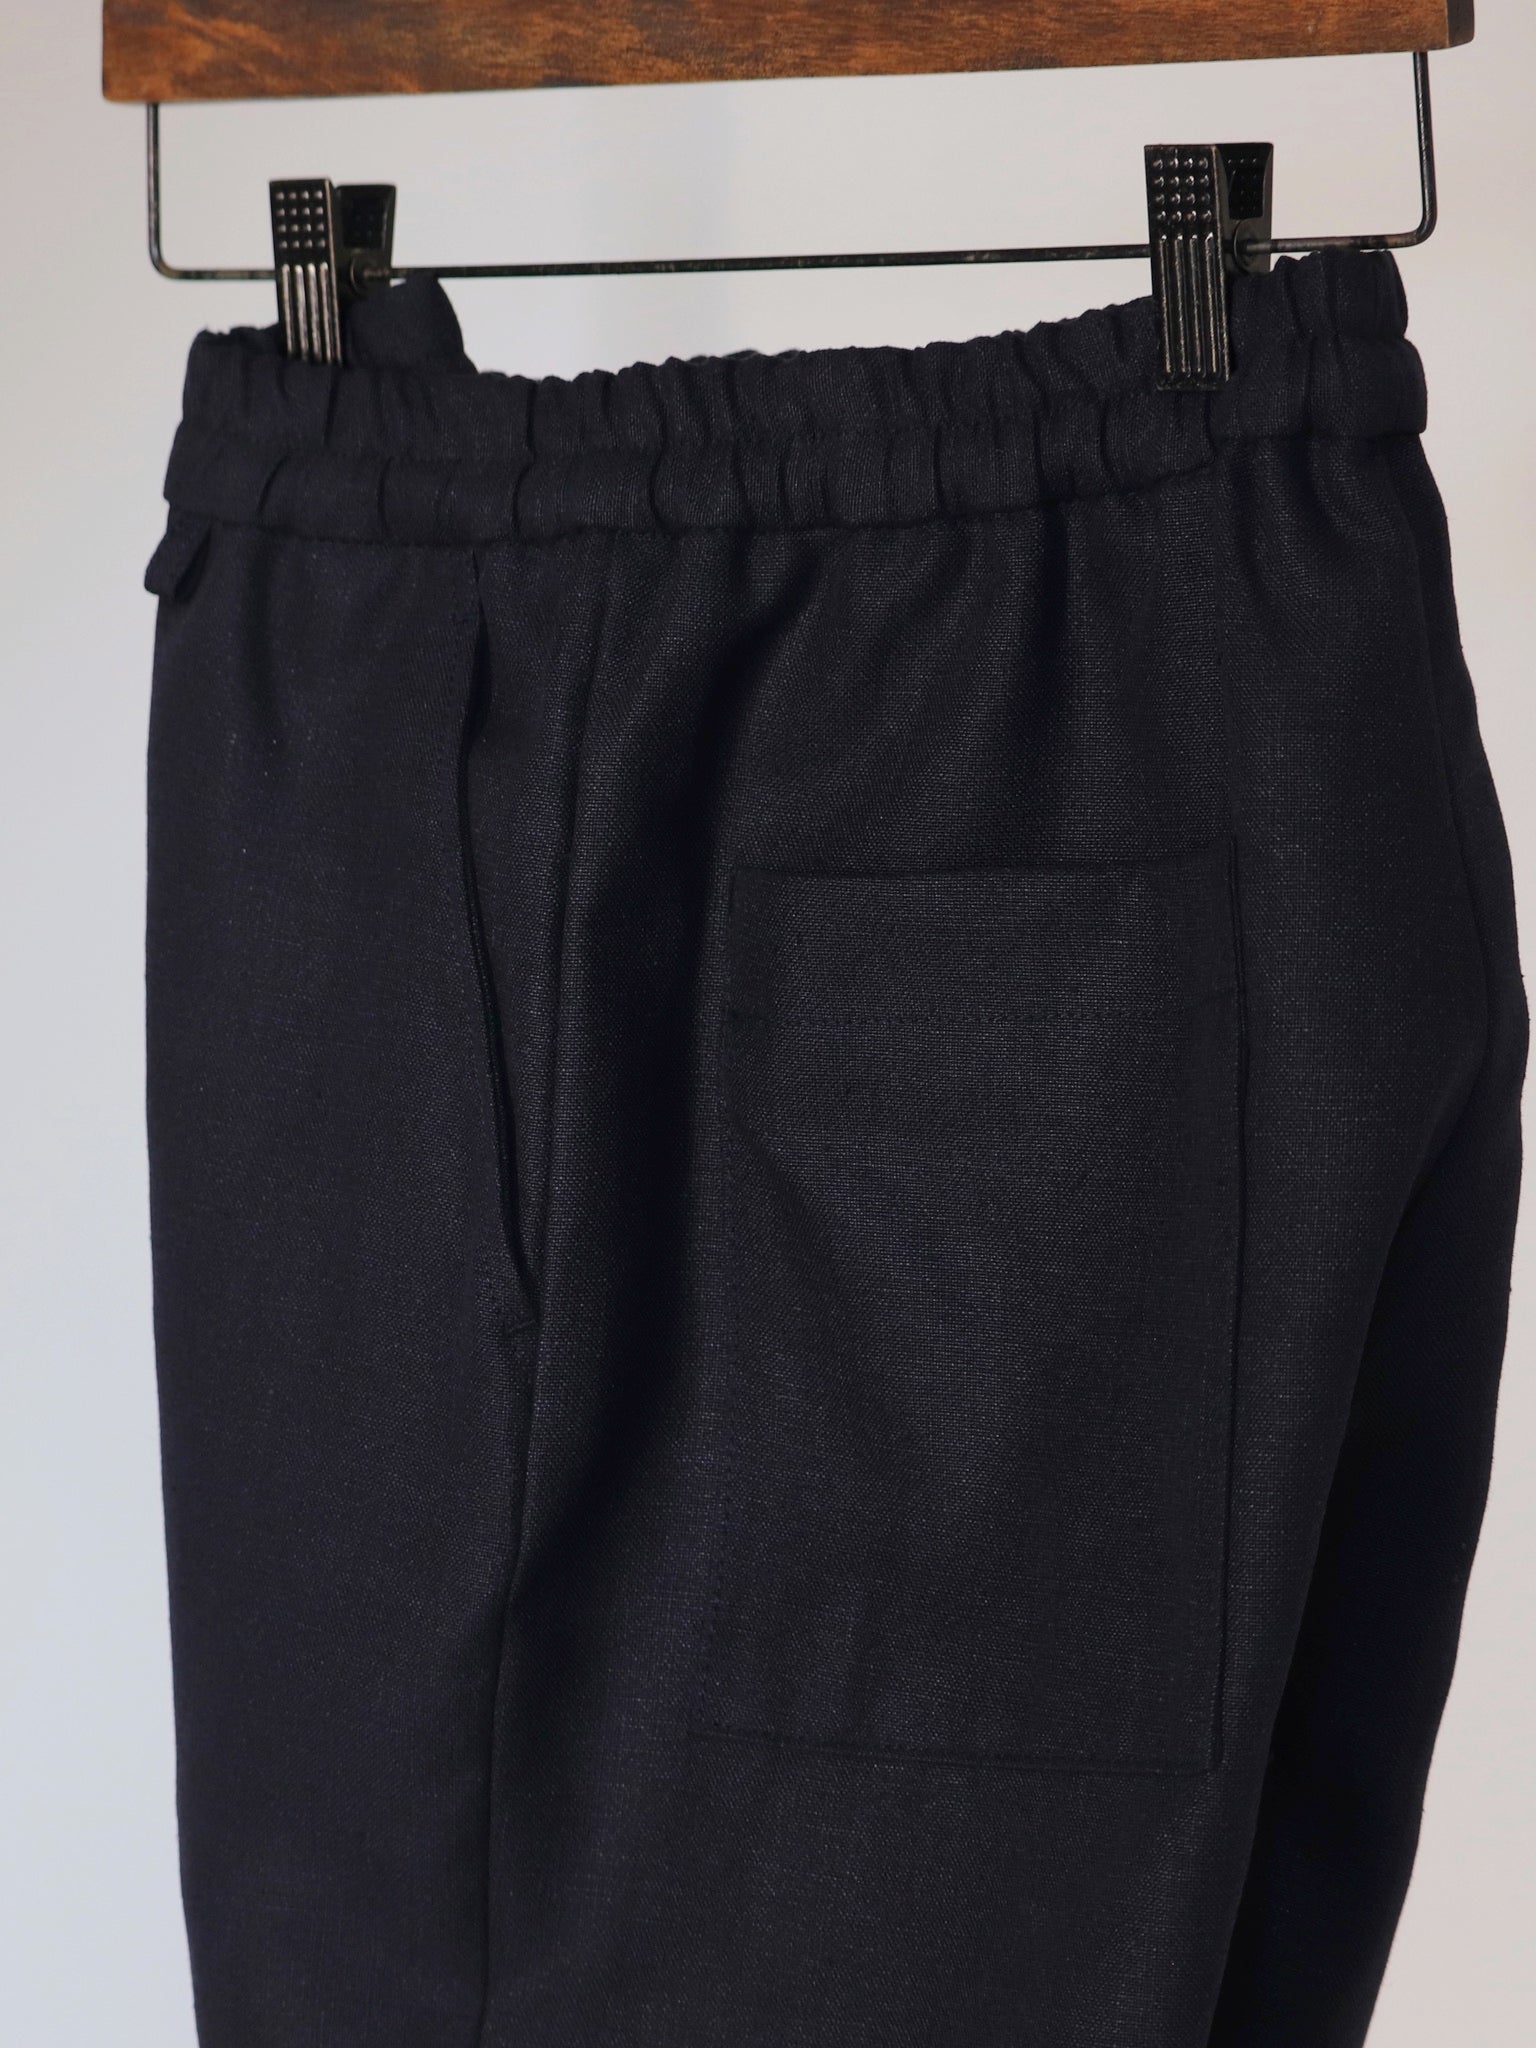 egretique-plain-linen-shorts-3